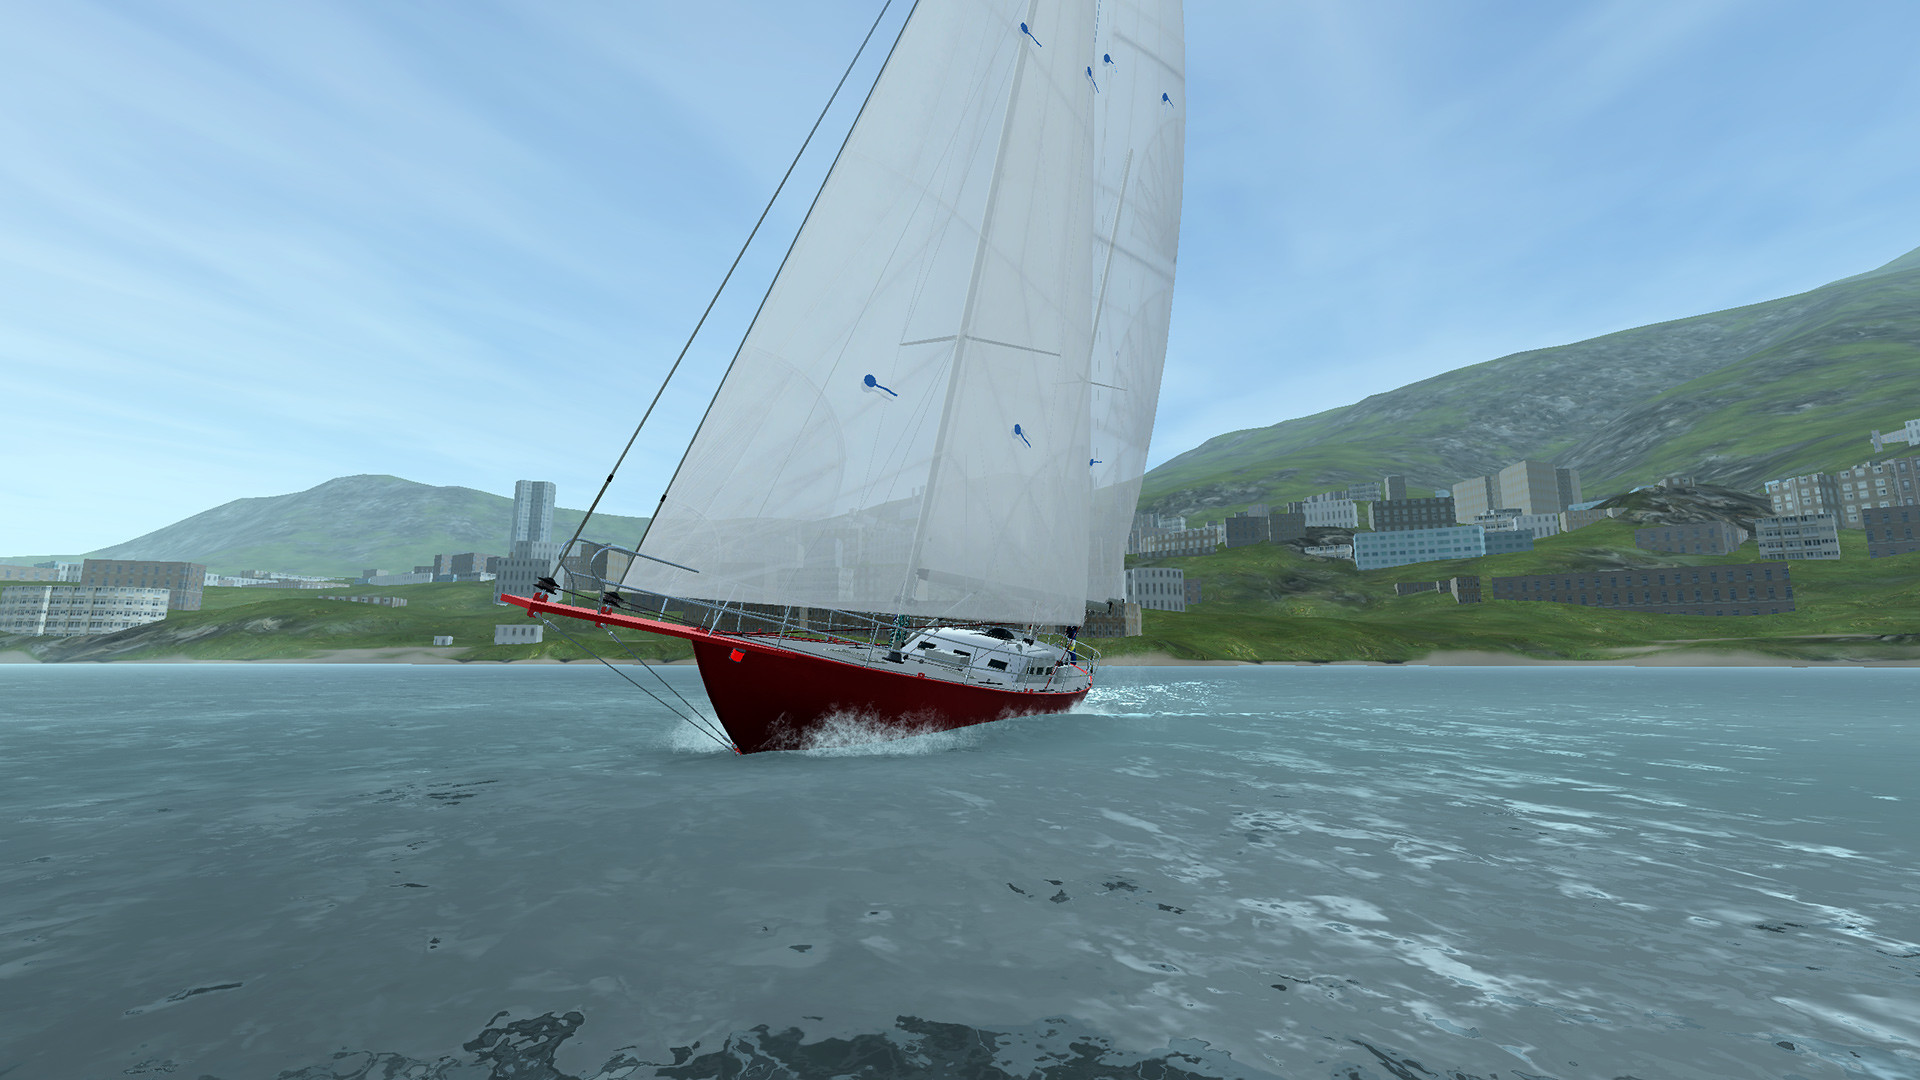 sailboat simulator online